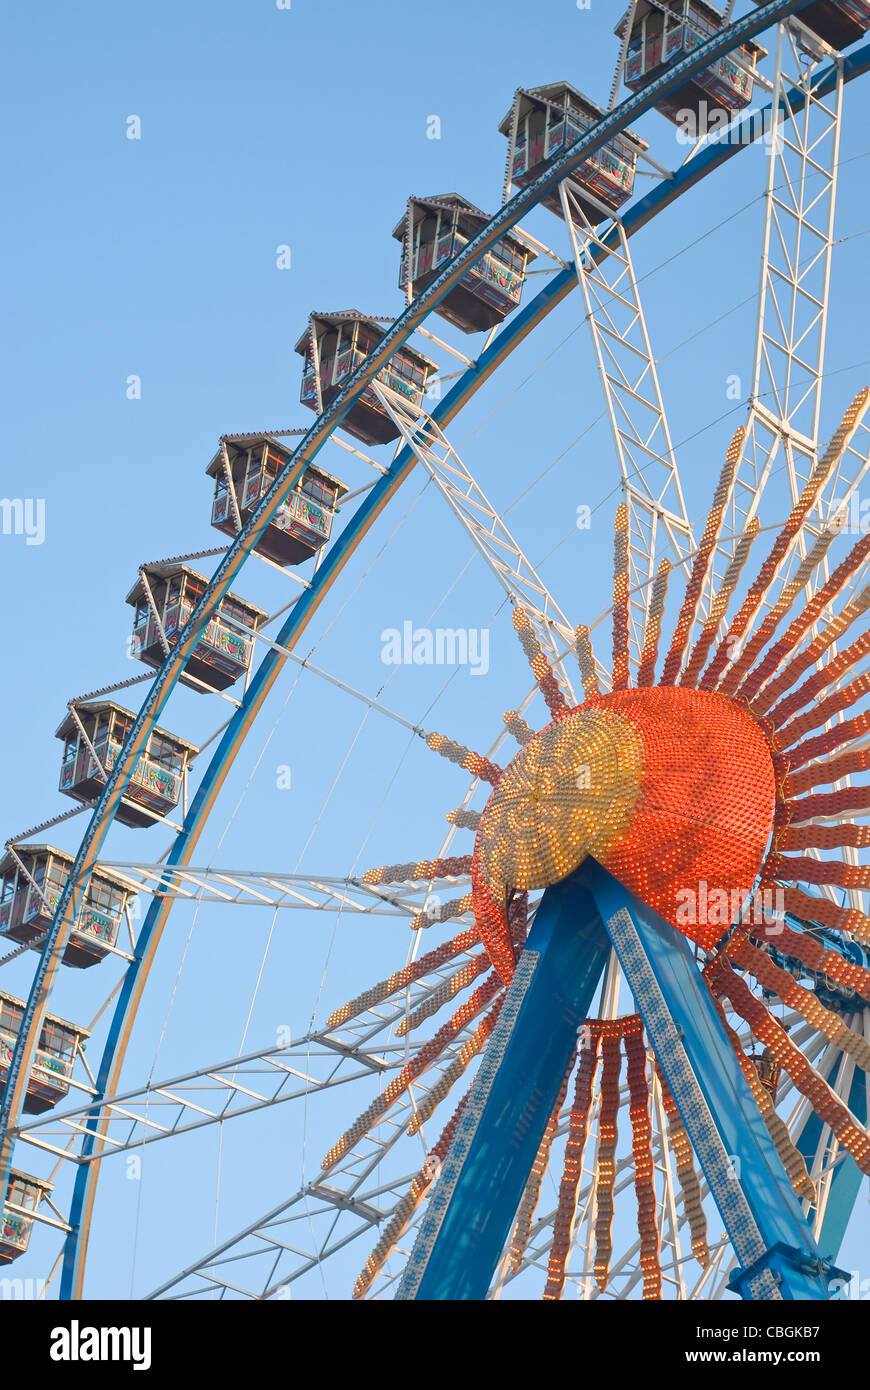 Grande ruota panoramica Ferris con gondole e luci elettriche Foto Stock